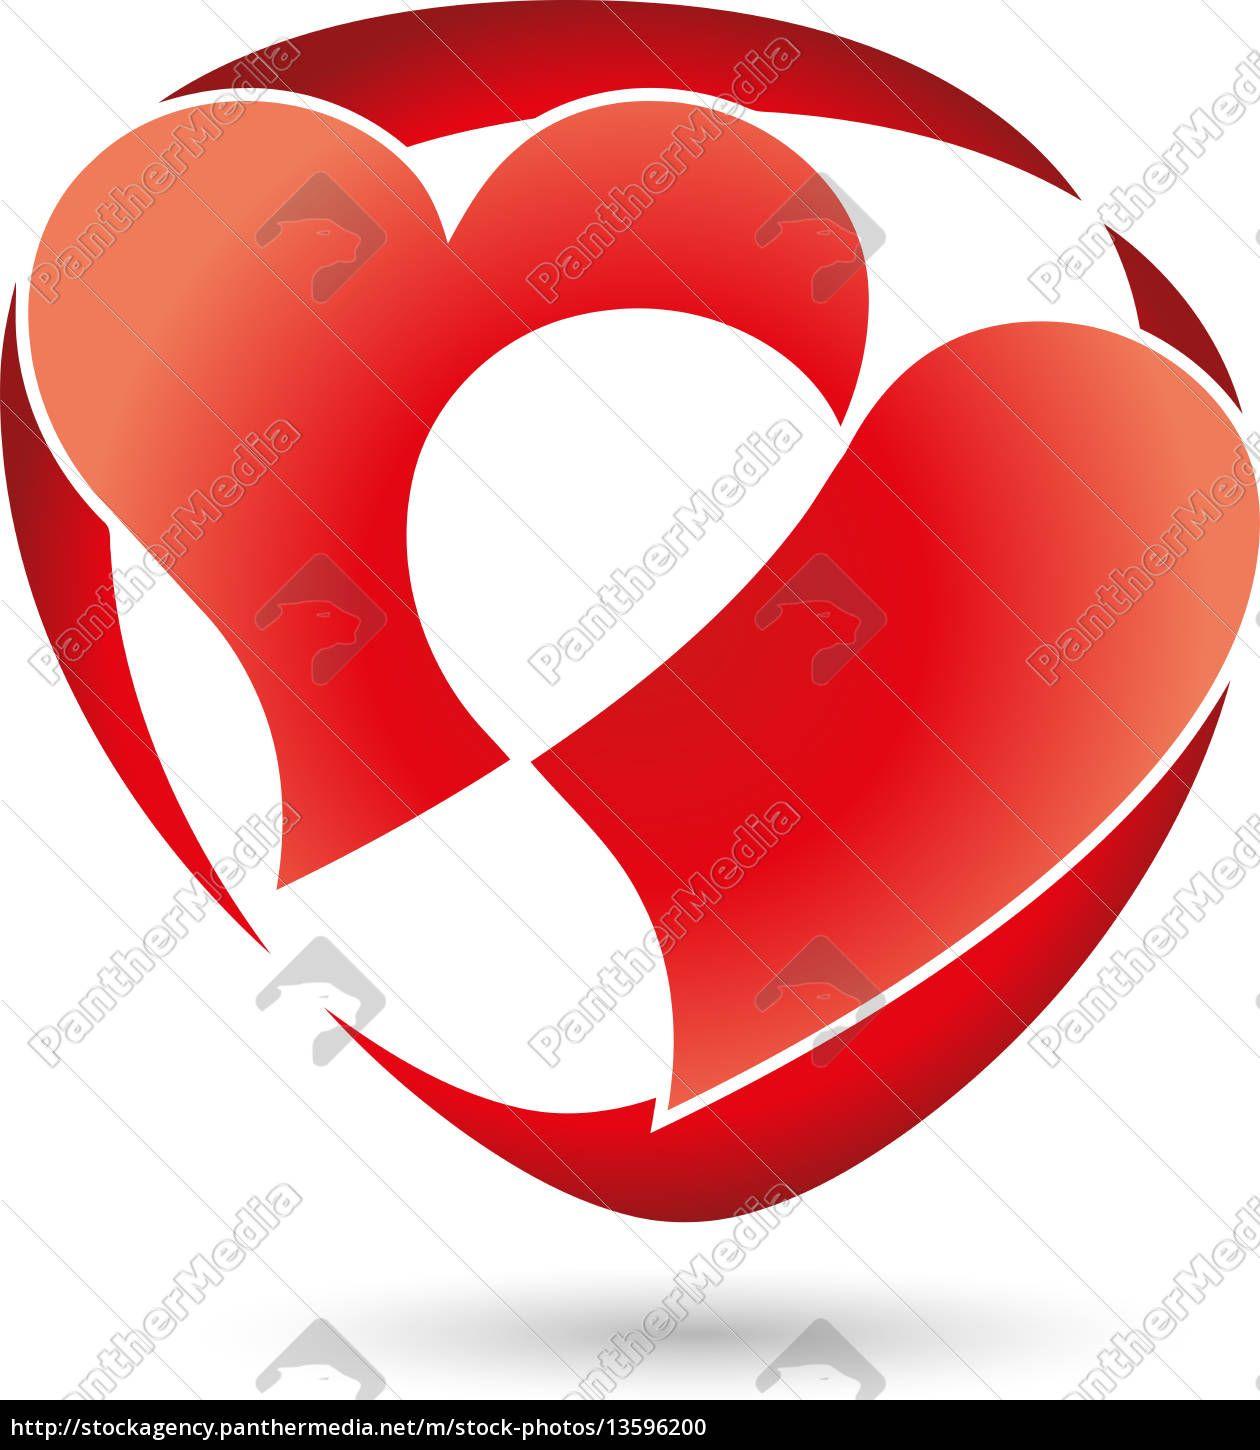 Two Hearts Logo - logo, heart, heart, two hearts free photo